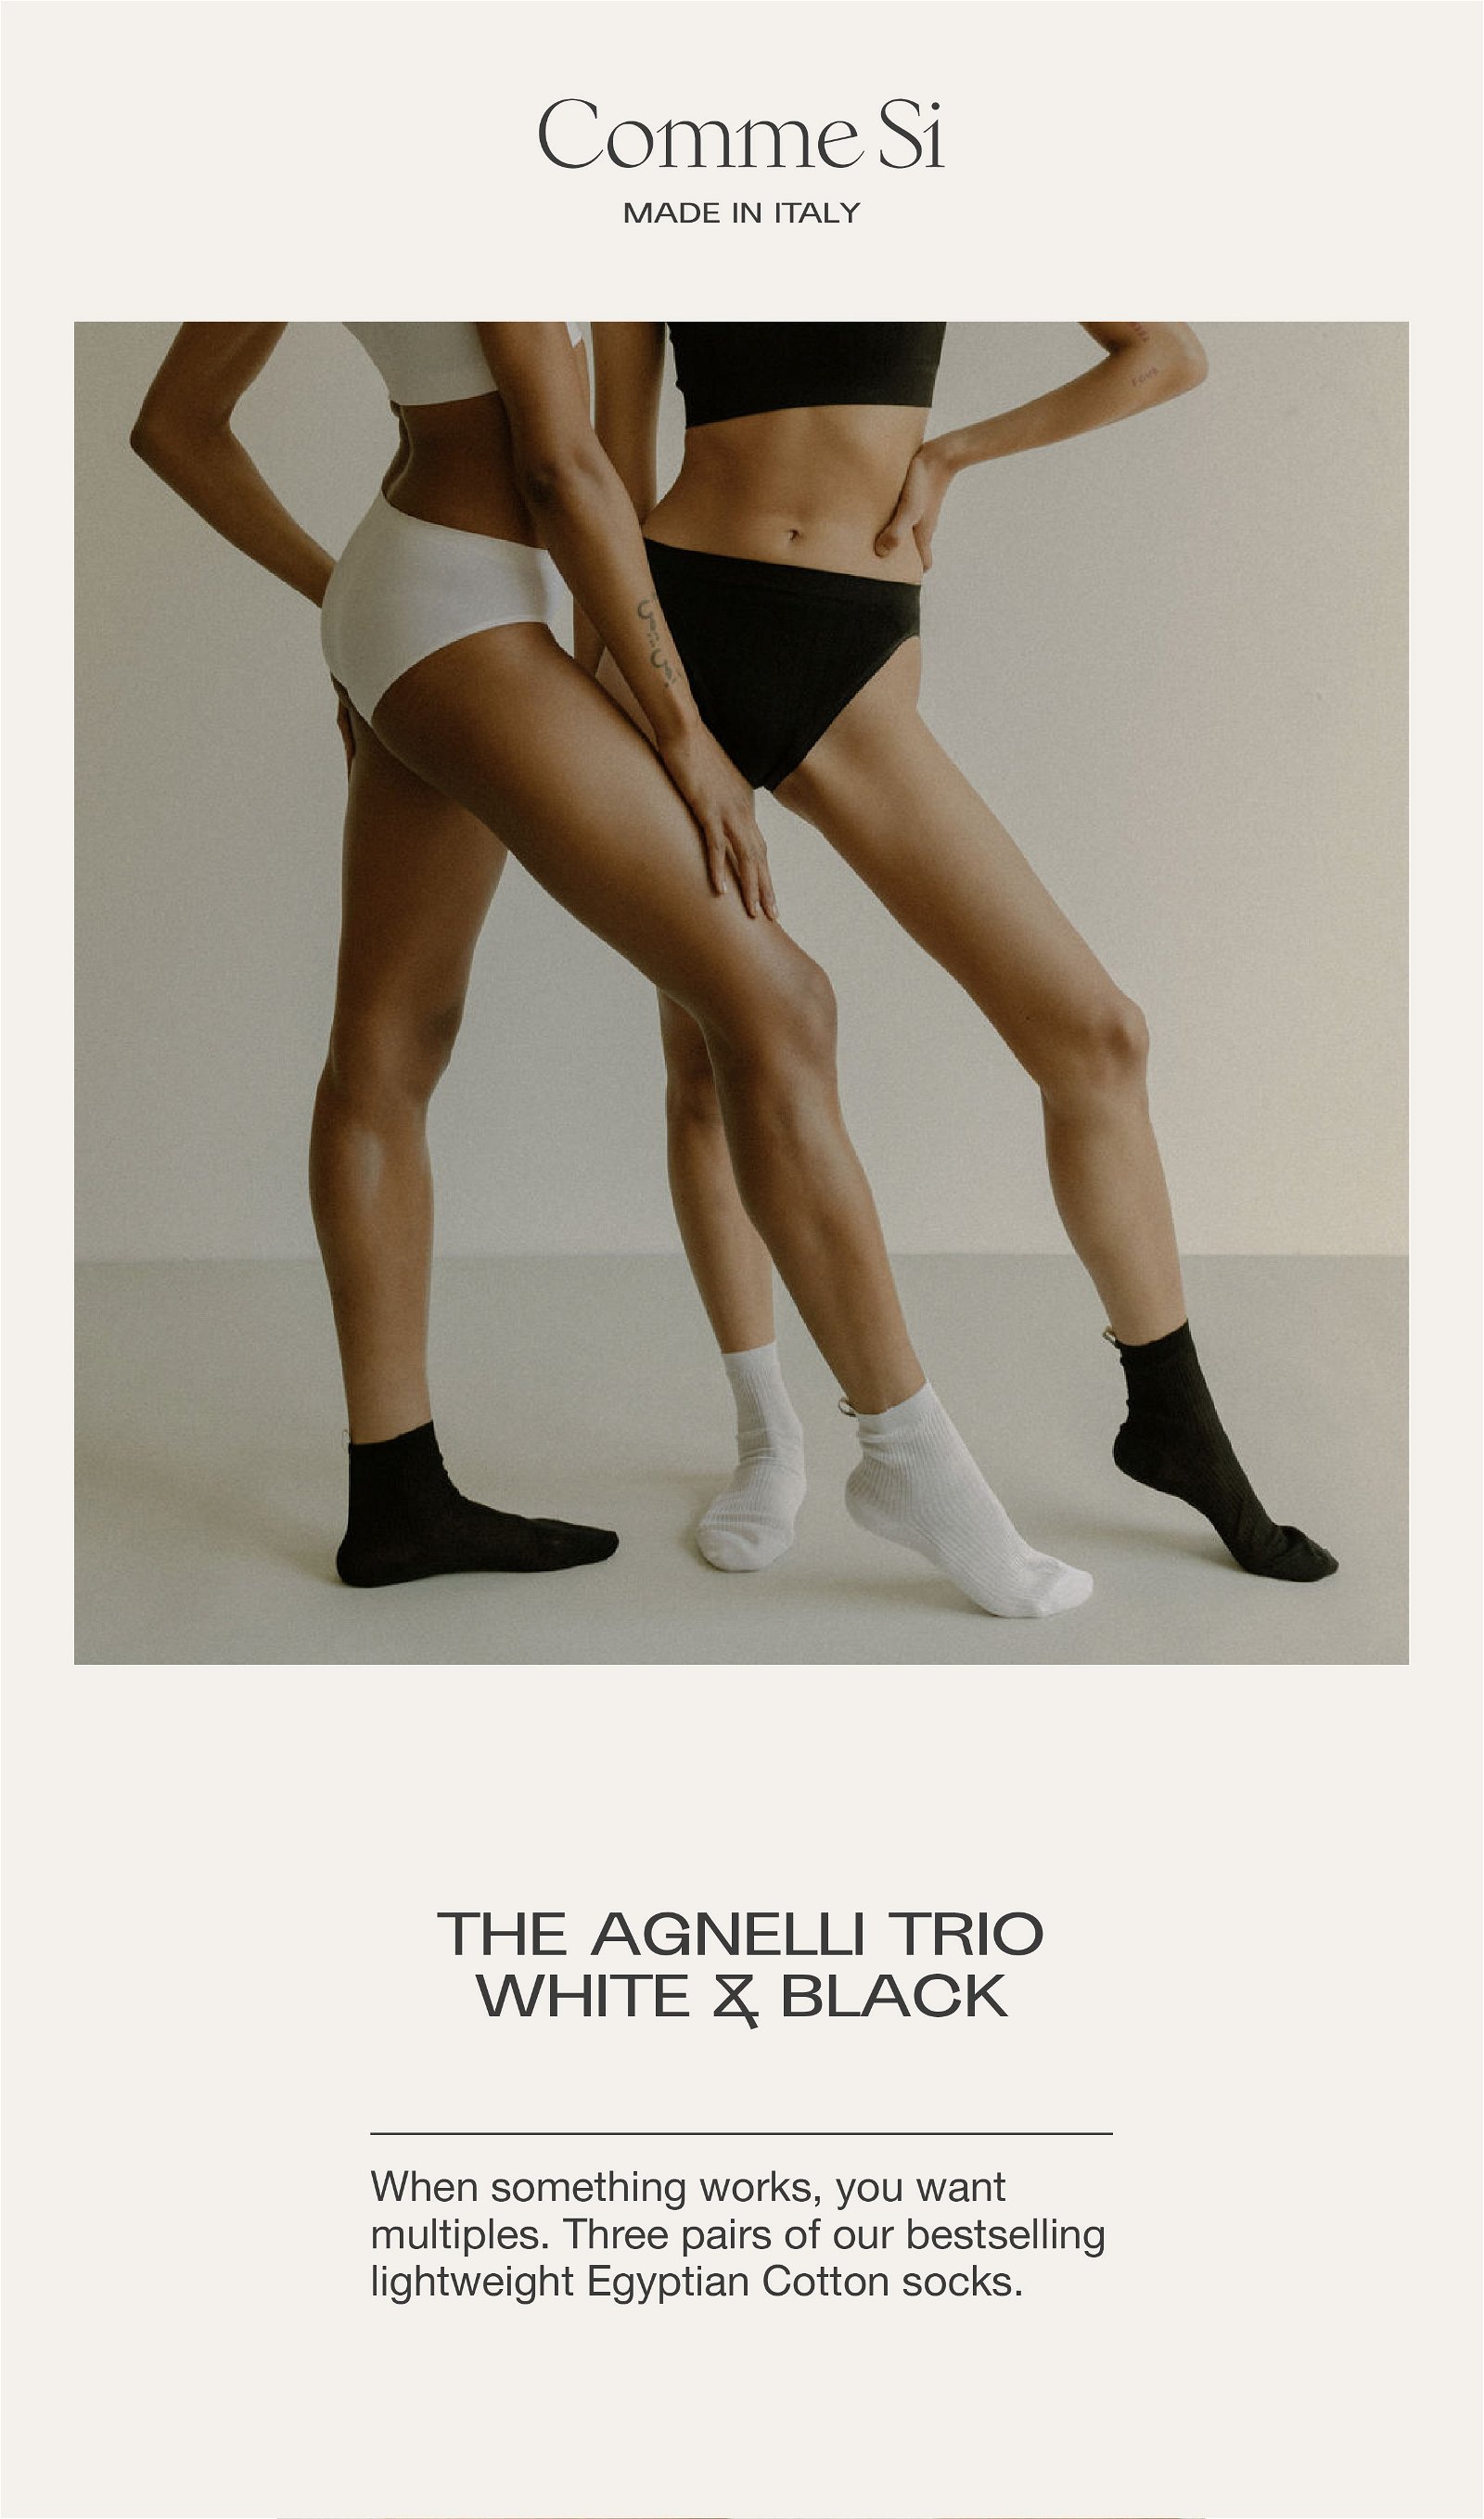 The Agnelli Trio, White & Black